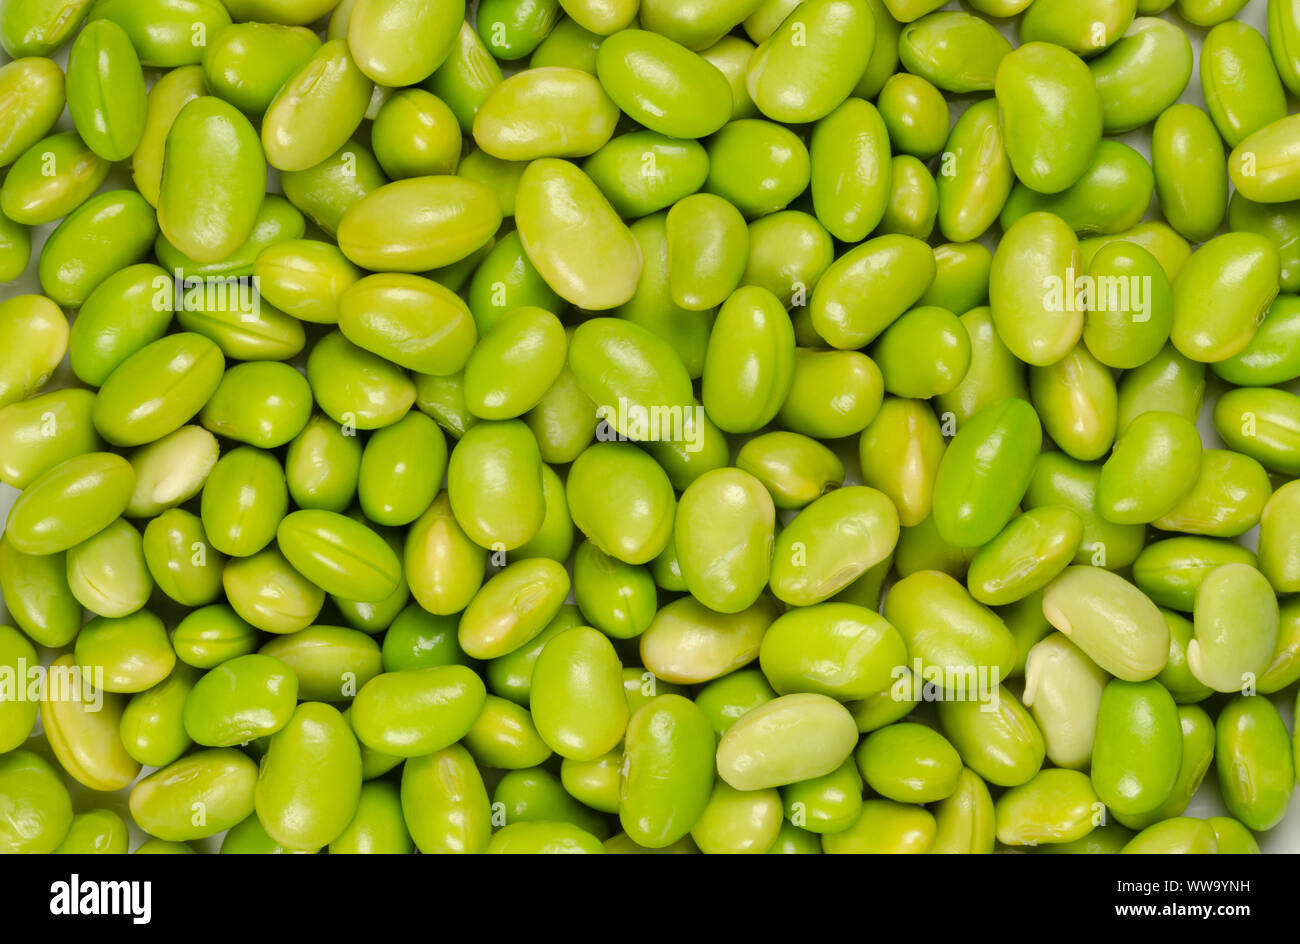 Edamame. Le soja vert. Appelé aussi mukimame non mûres, les graines de soja à l'extérieur de la gousse. Glycine max, une légumineuse, comestibles après cuisson et une source de protéines. Banque D'Images